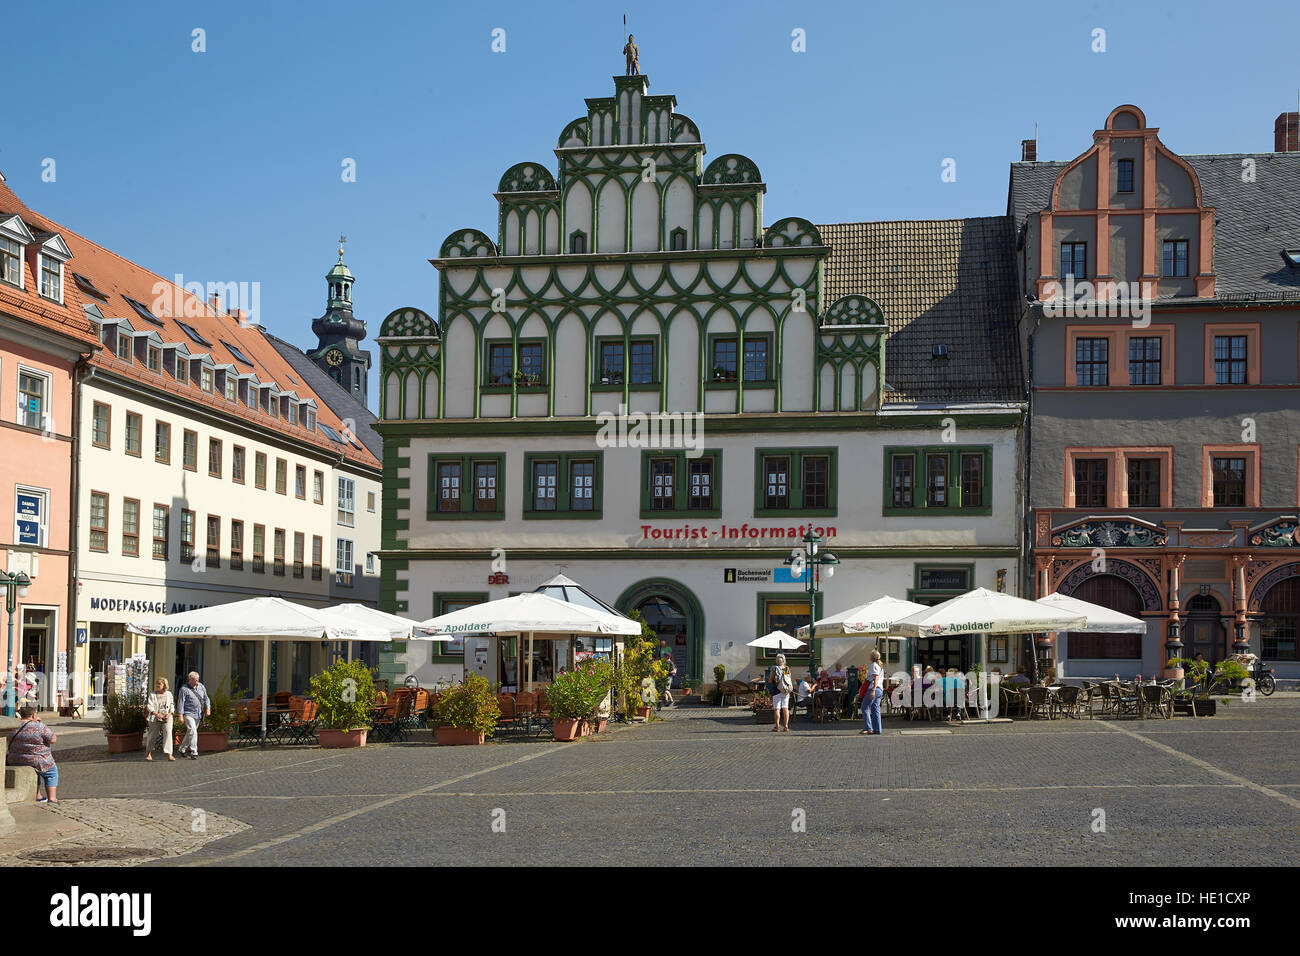 Hôtel de Ville, Centre d'information touristique au marché, Weimar, Thuringe, Allemagne Banque D'Images